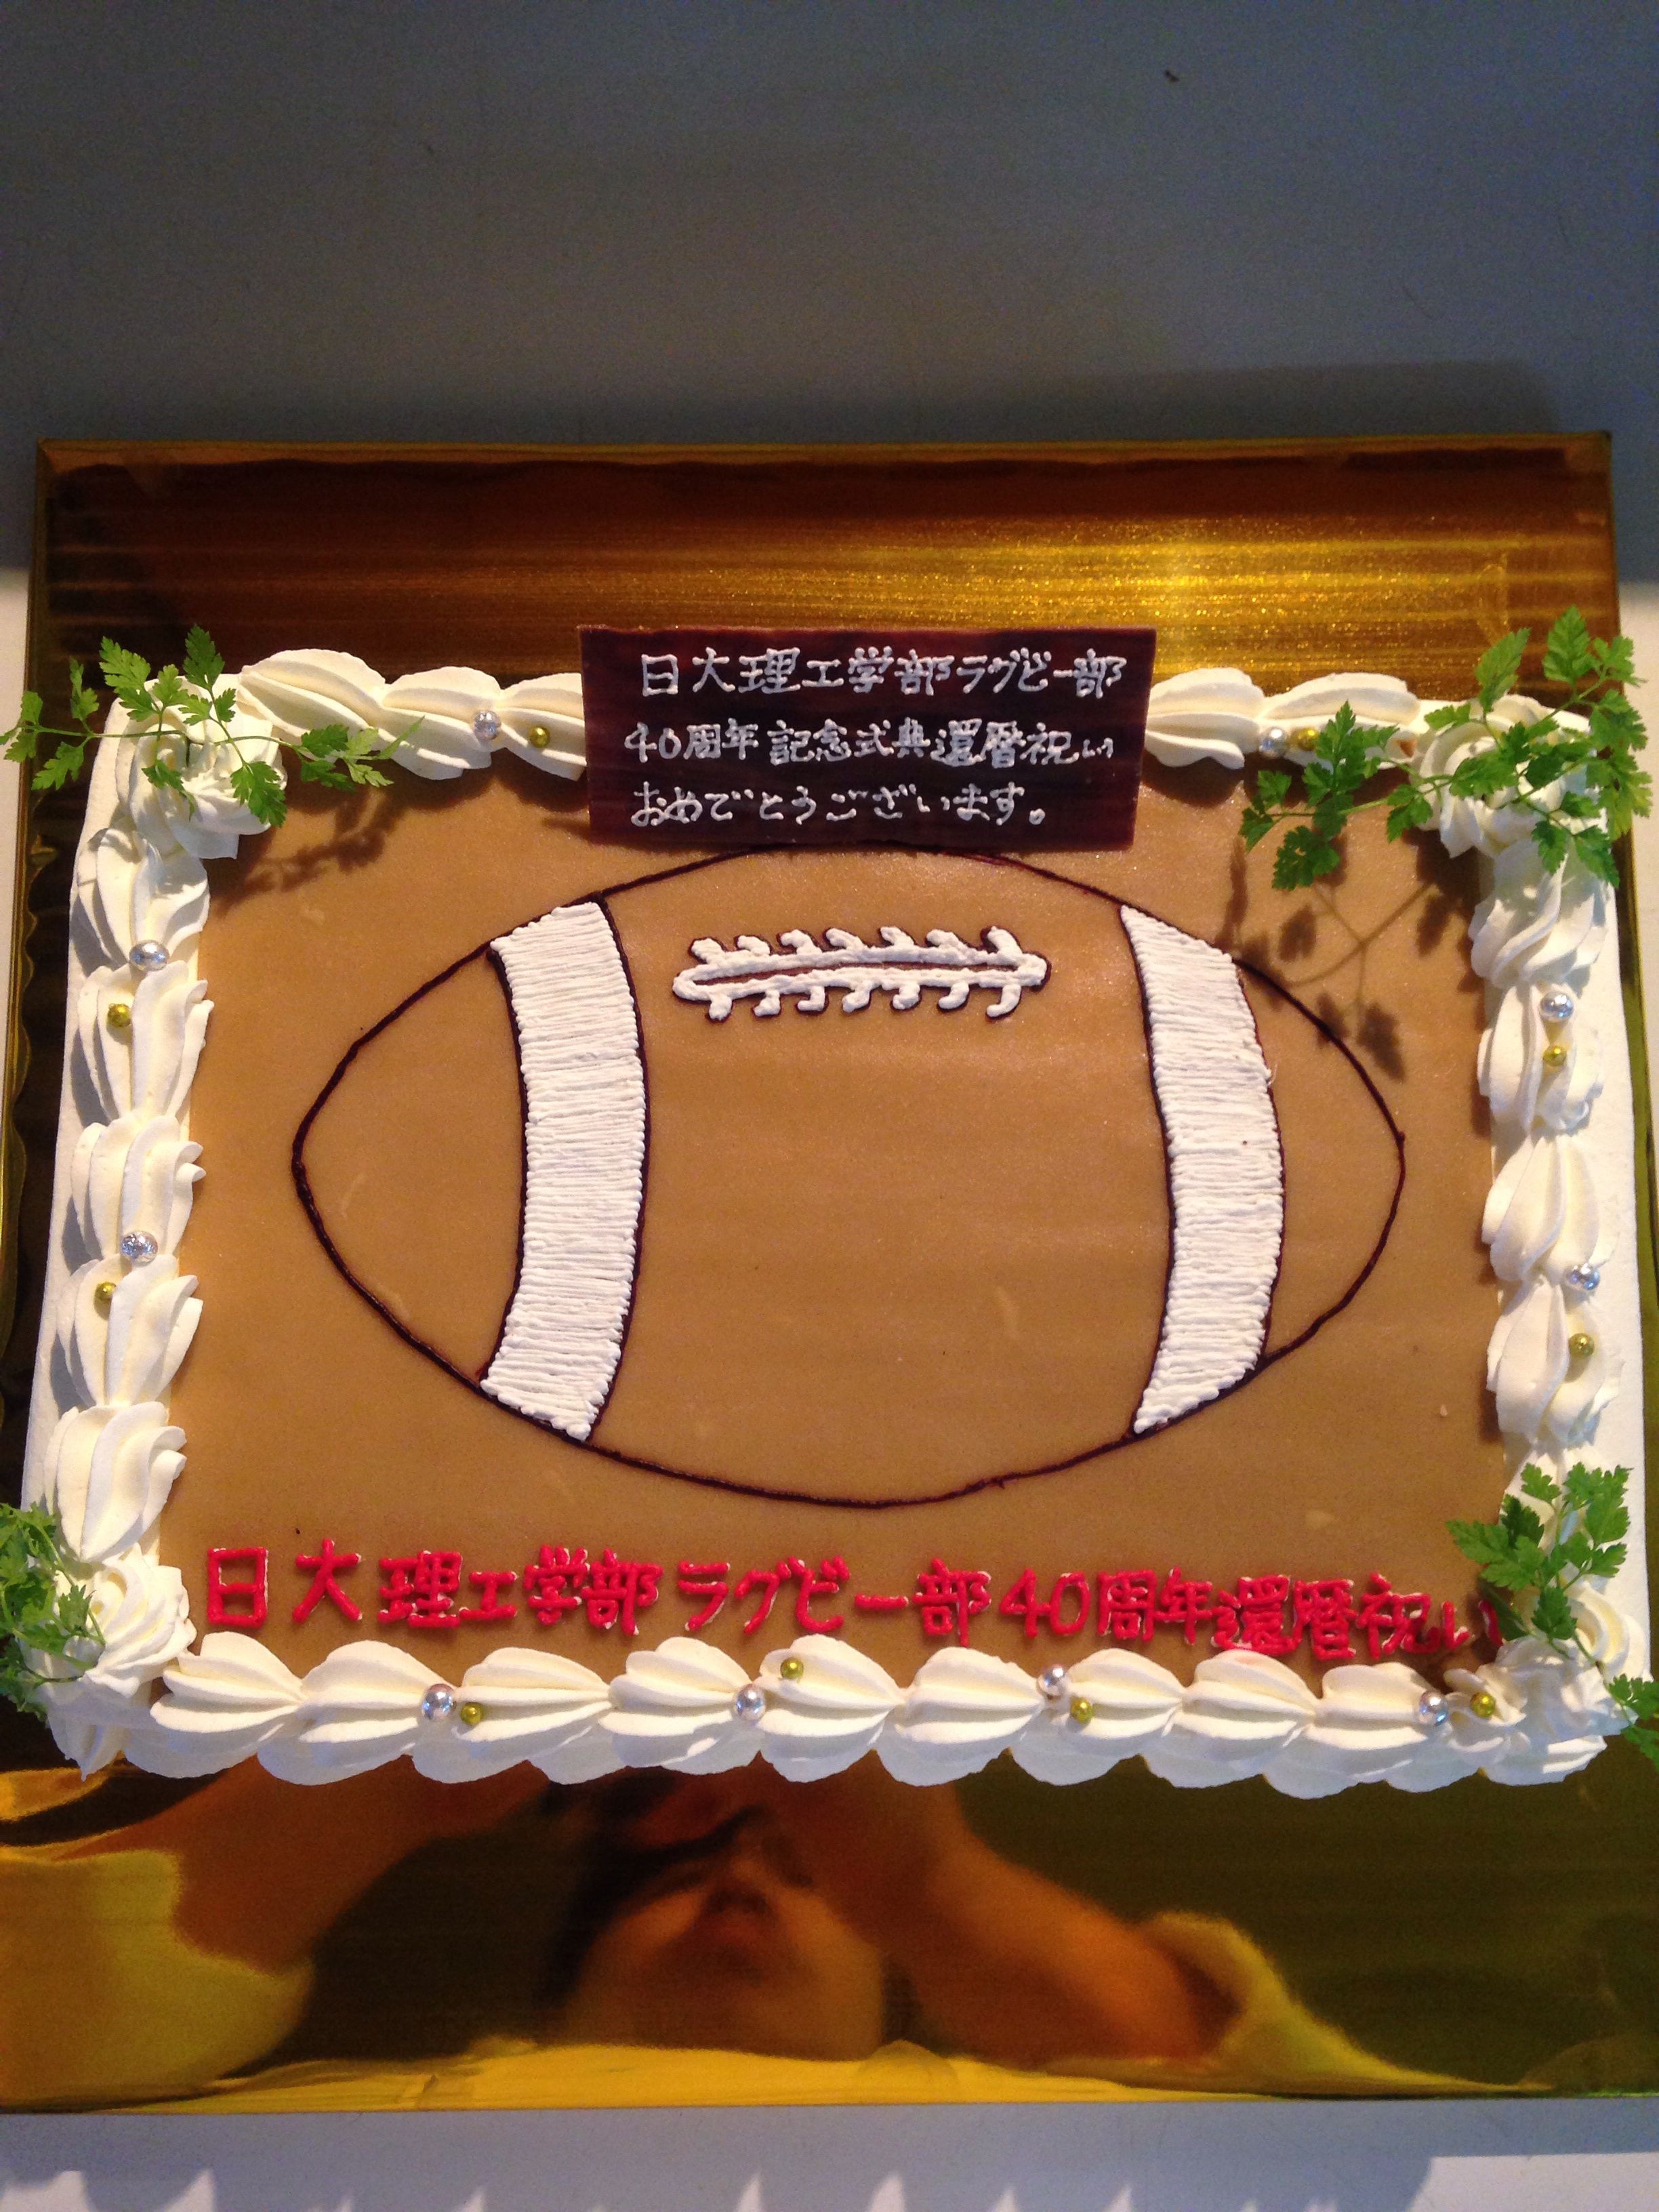 イラスト絵描スポーツケーキ横浜 デコレーションケーキのデリバリーショップ 楽天ブログ